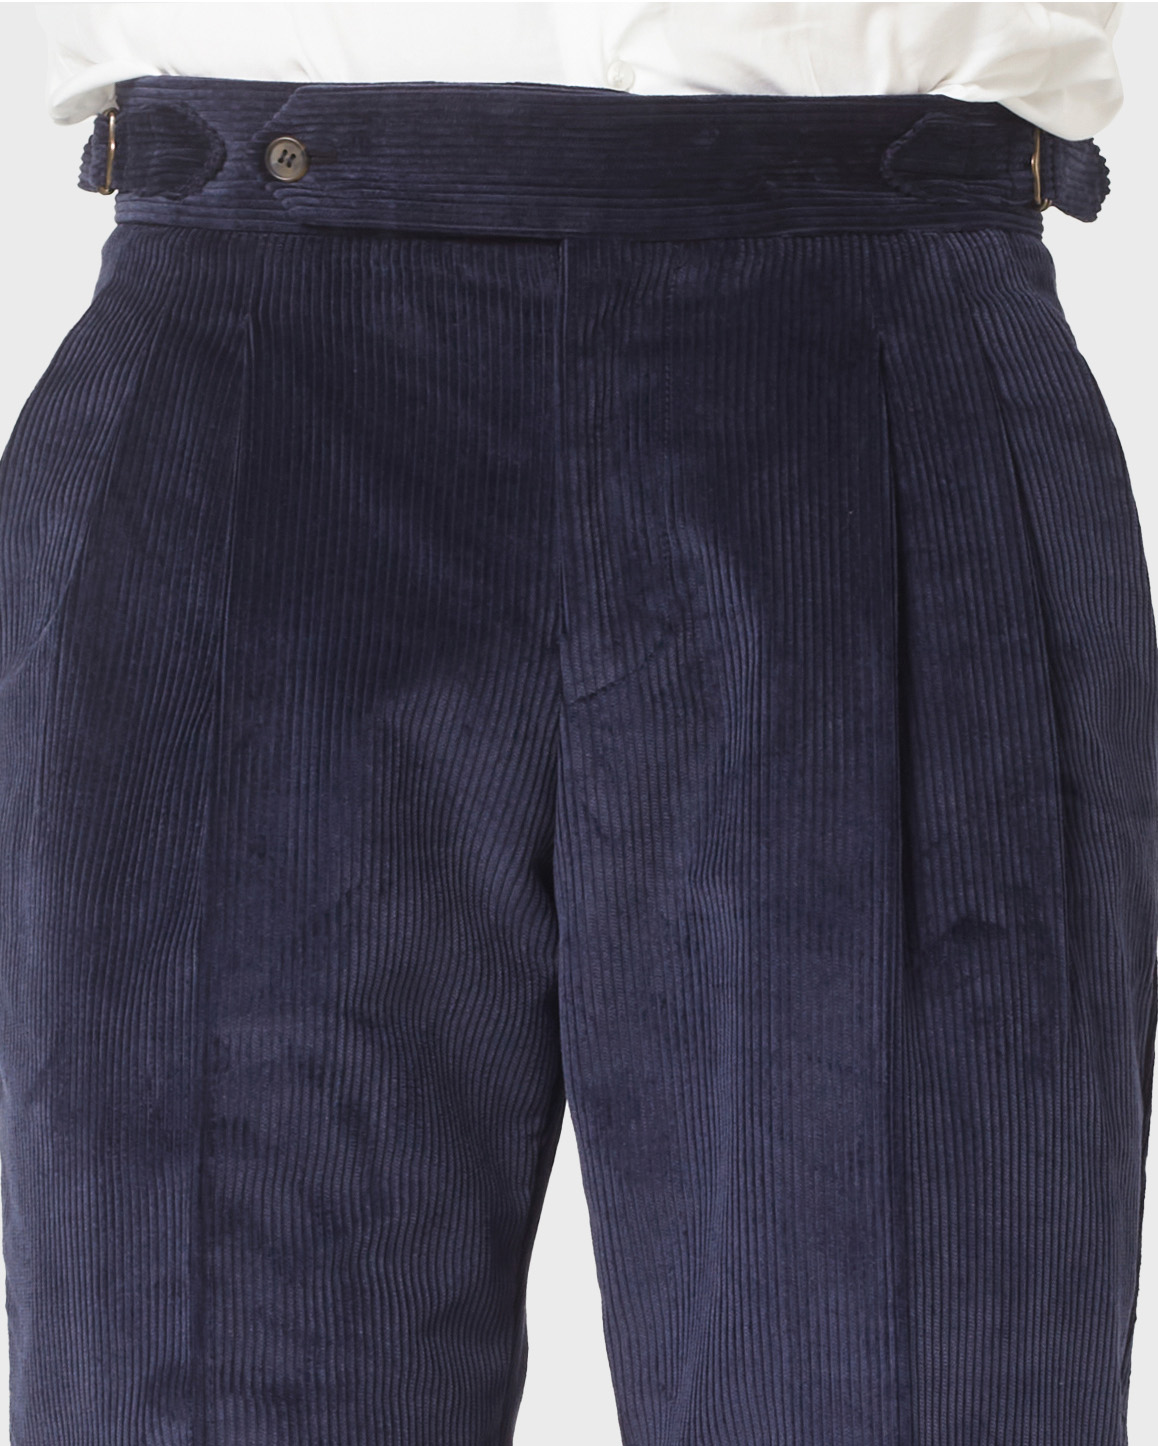 Pantalone 1 Corduroy Blue